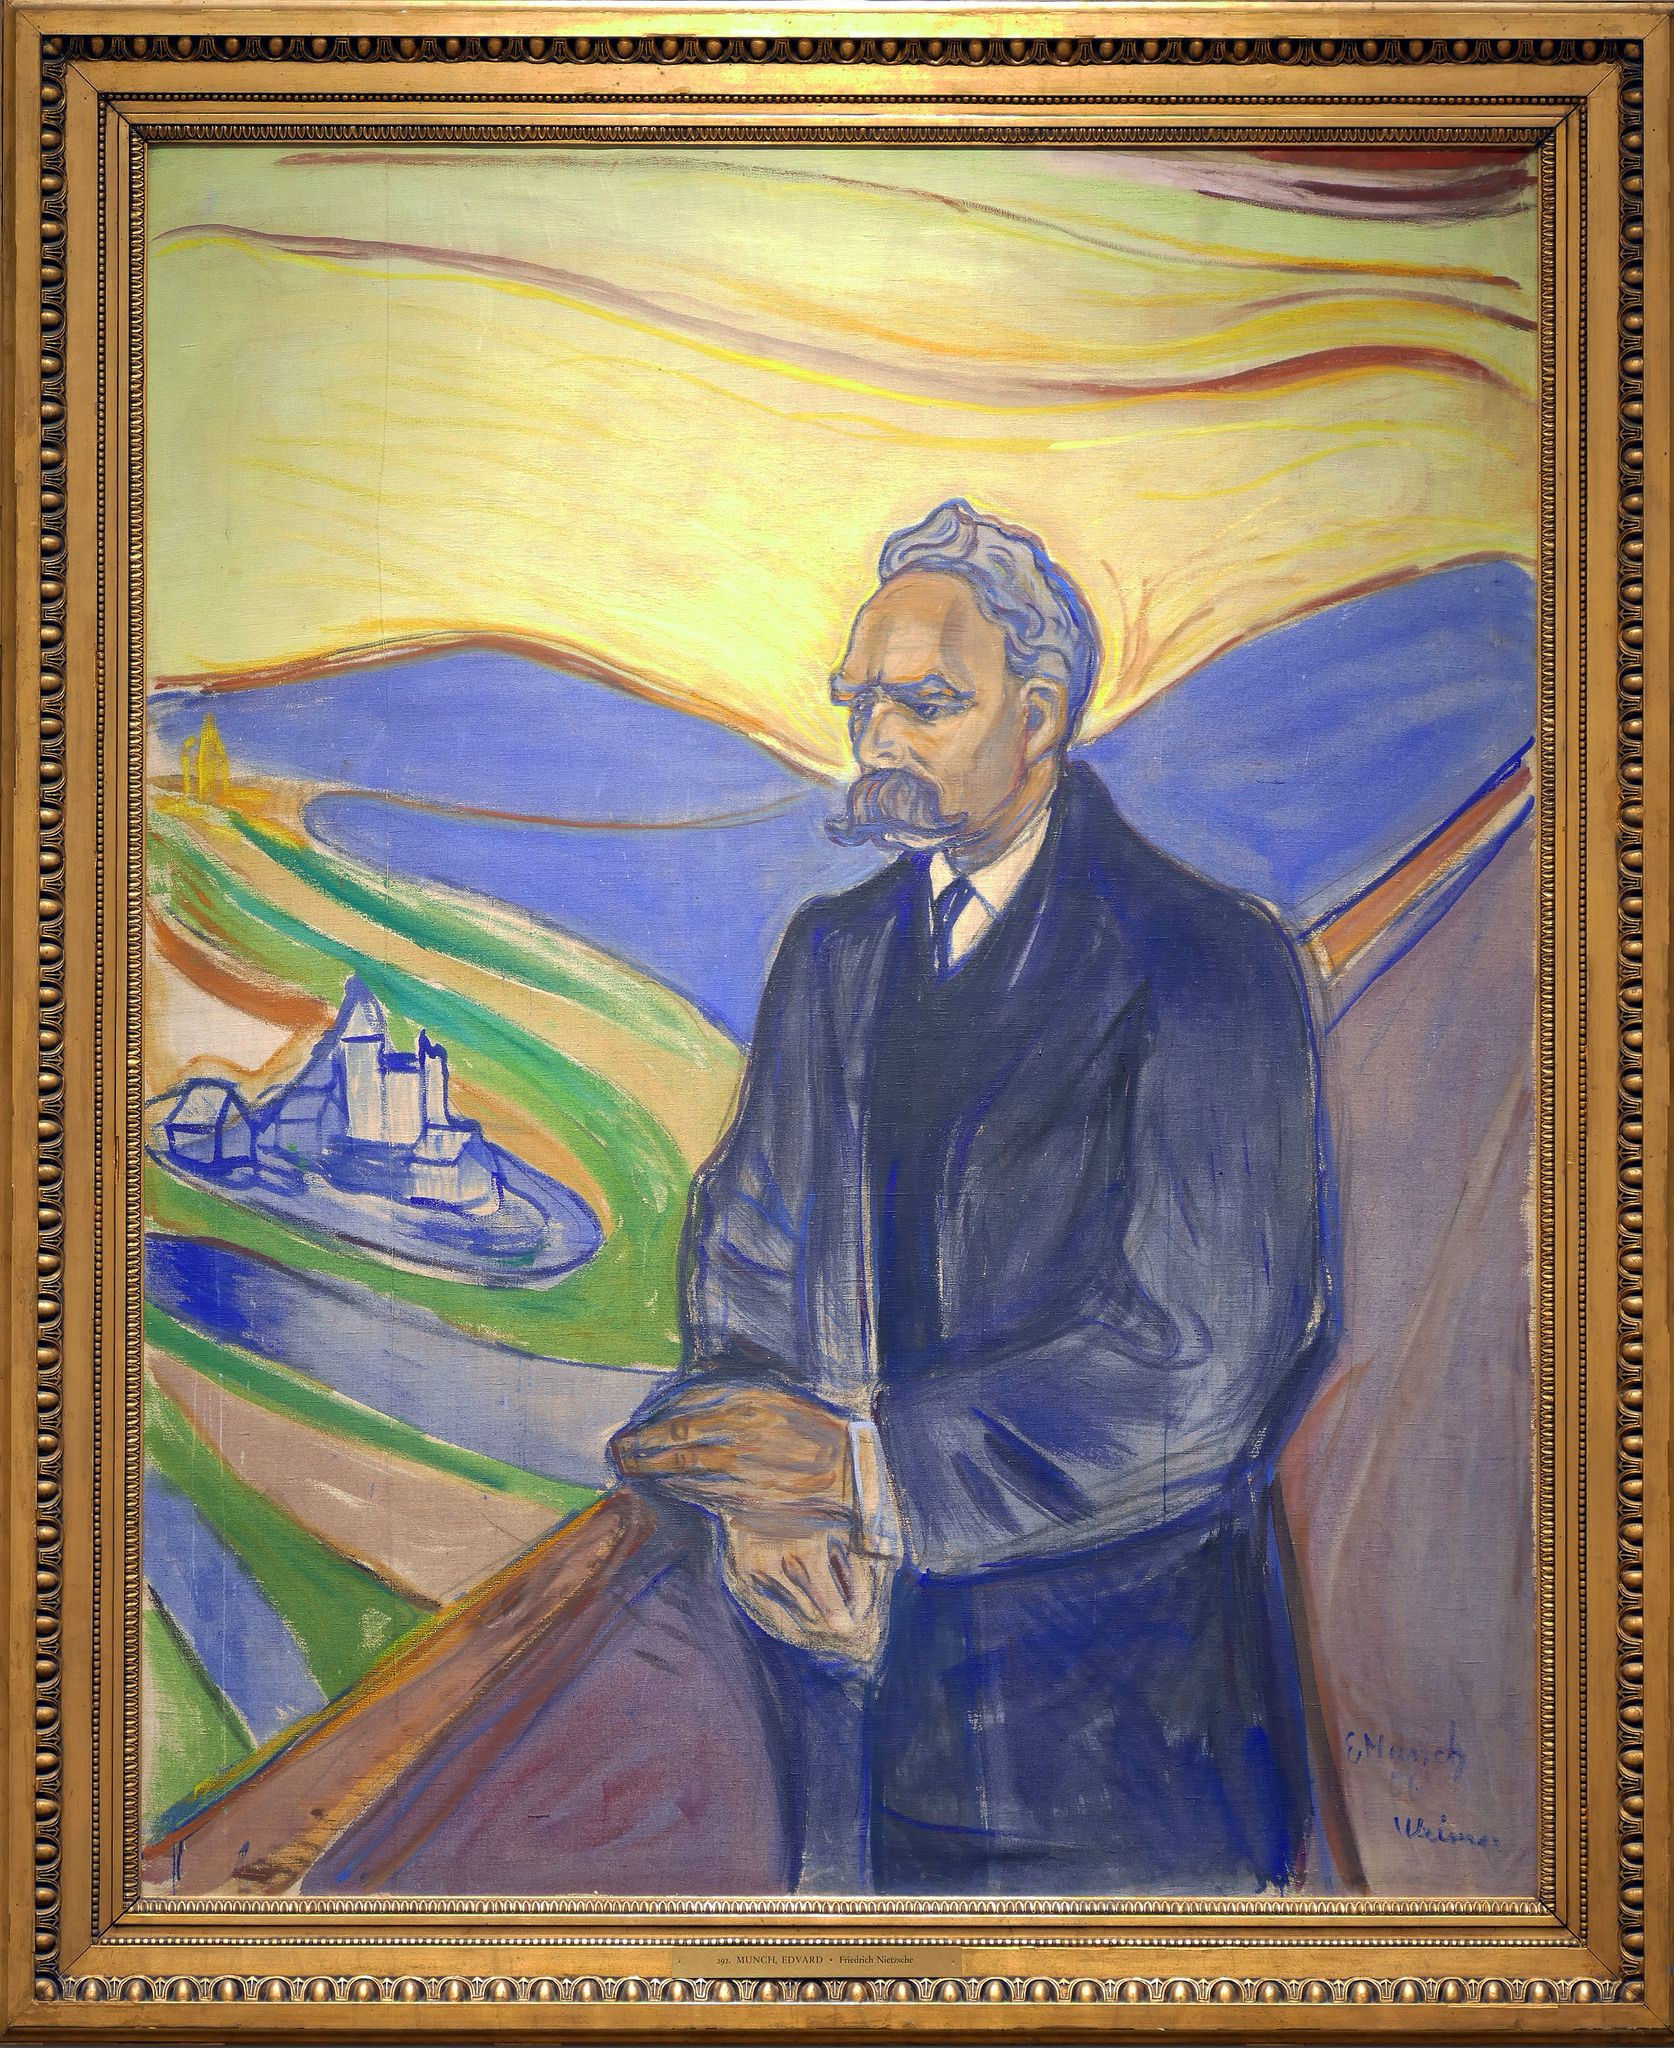 Ritratto di Friedrich Nietzsche dipinto da Edvard Munch nel 1906, questo famoso pittore espressionista era meglio conosciuto per il suo famoso dipinto 